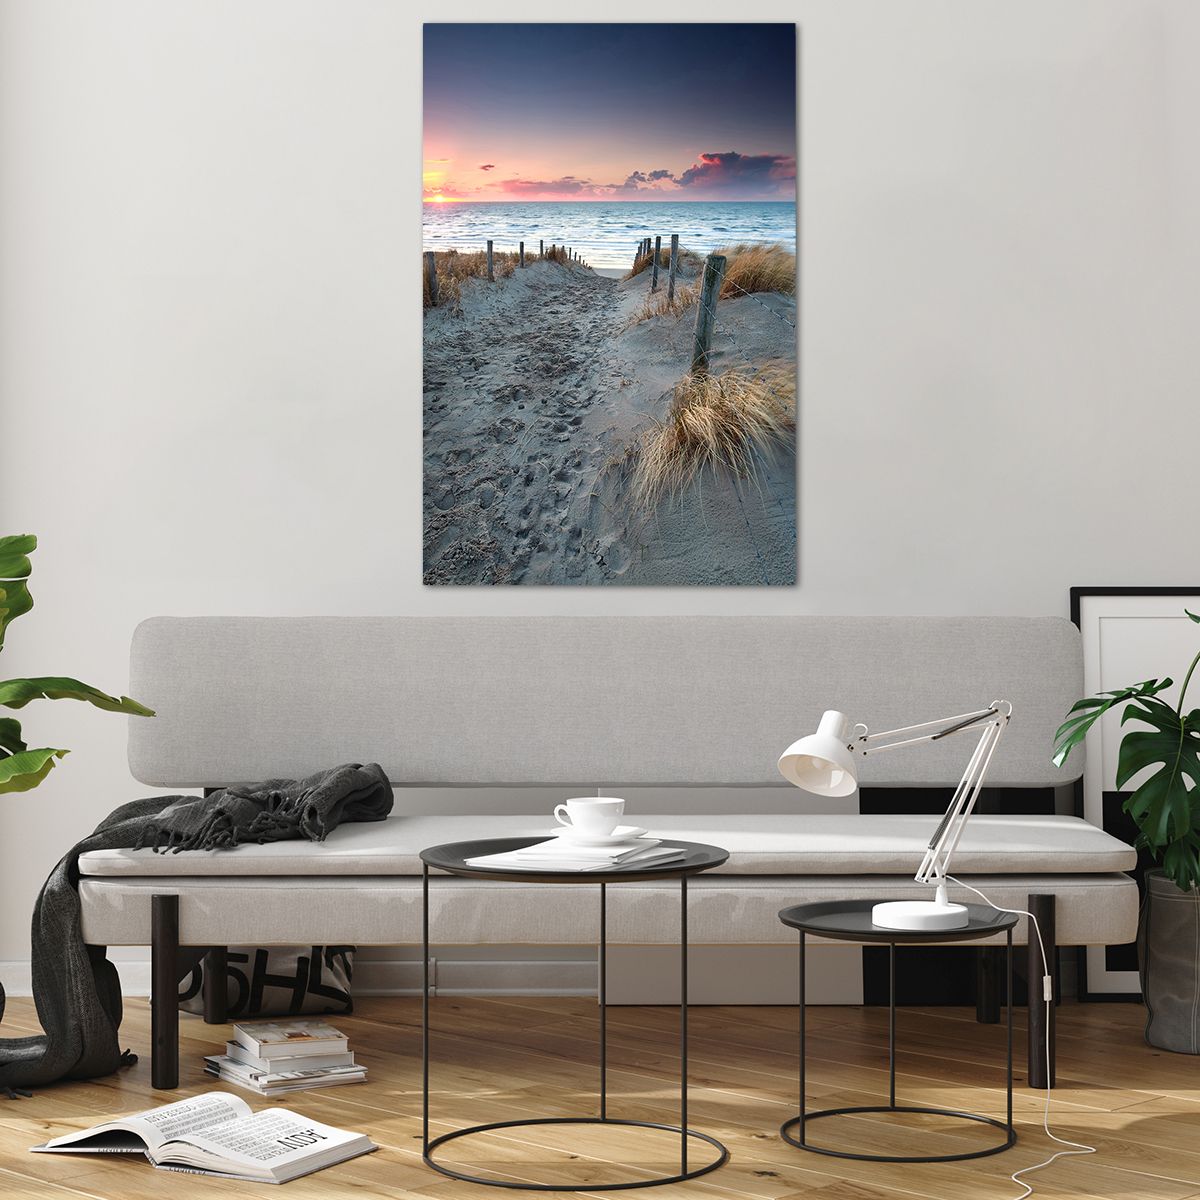 Bild på glas Landskap, Bild på glas Hav, Bild på glas Strand, Bild på glas Dyn, Bild på glas Solnedgången